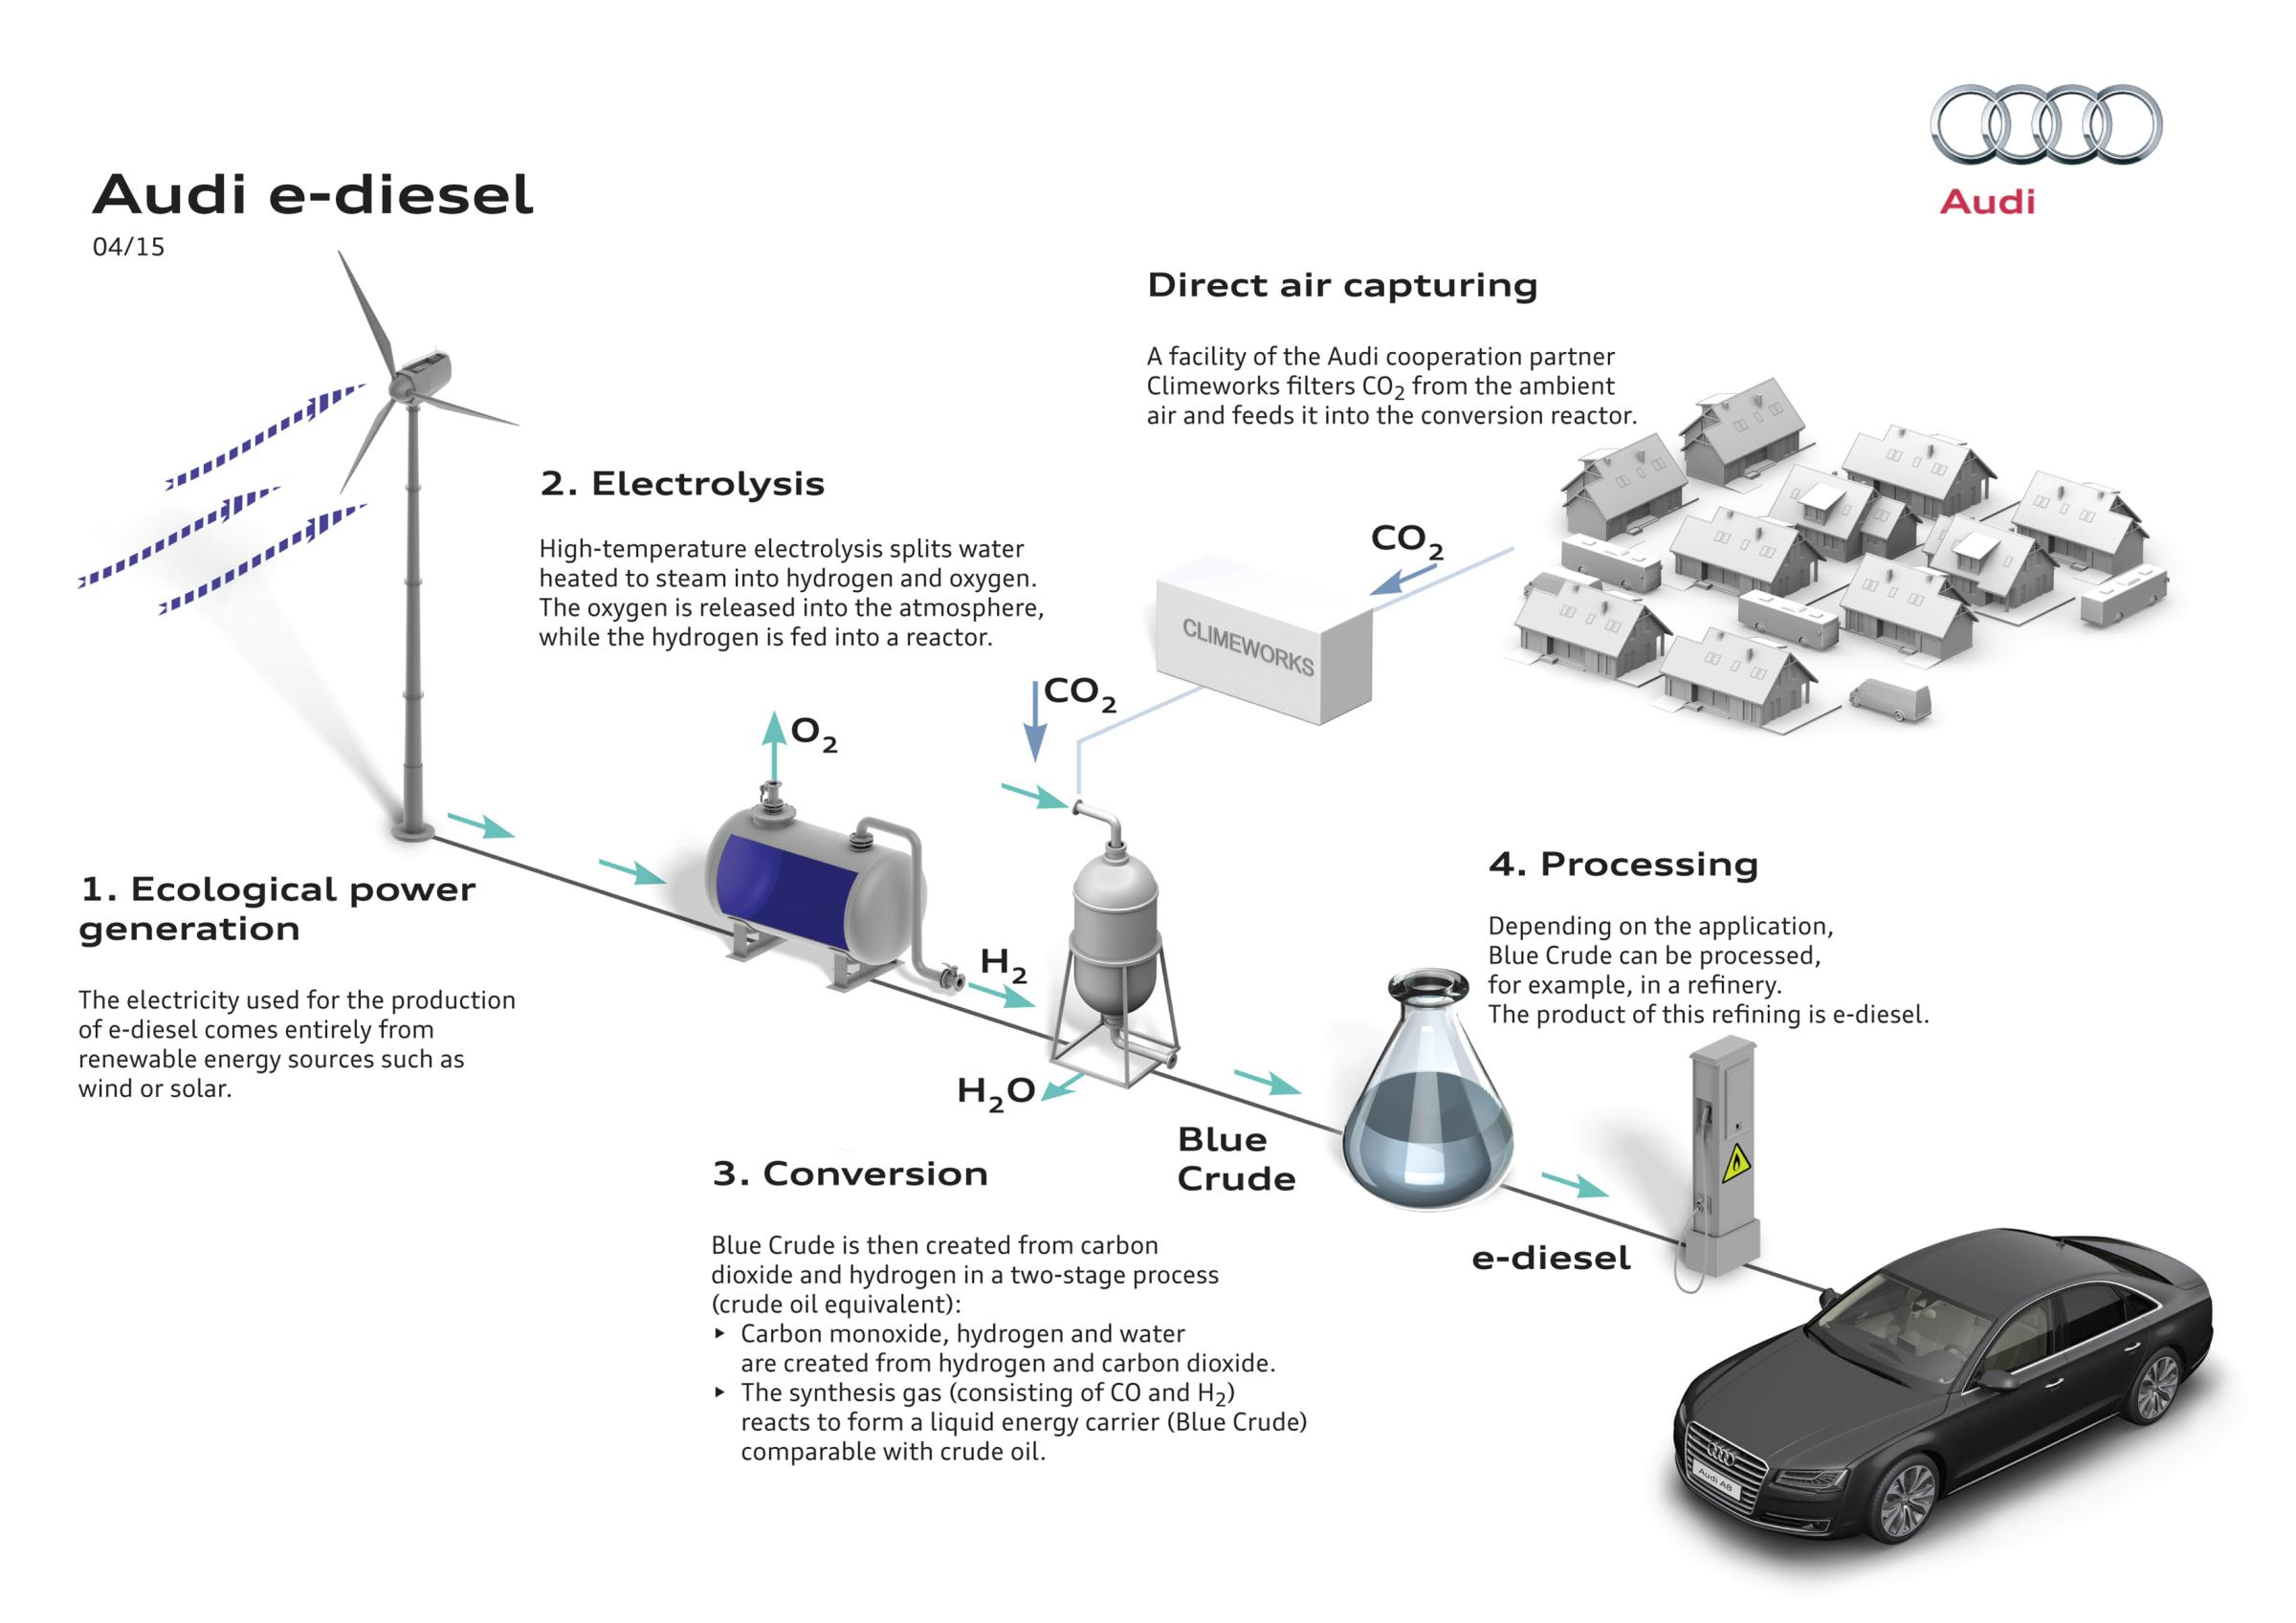 Visual representation of Audi e-diesel